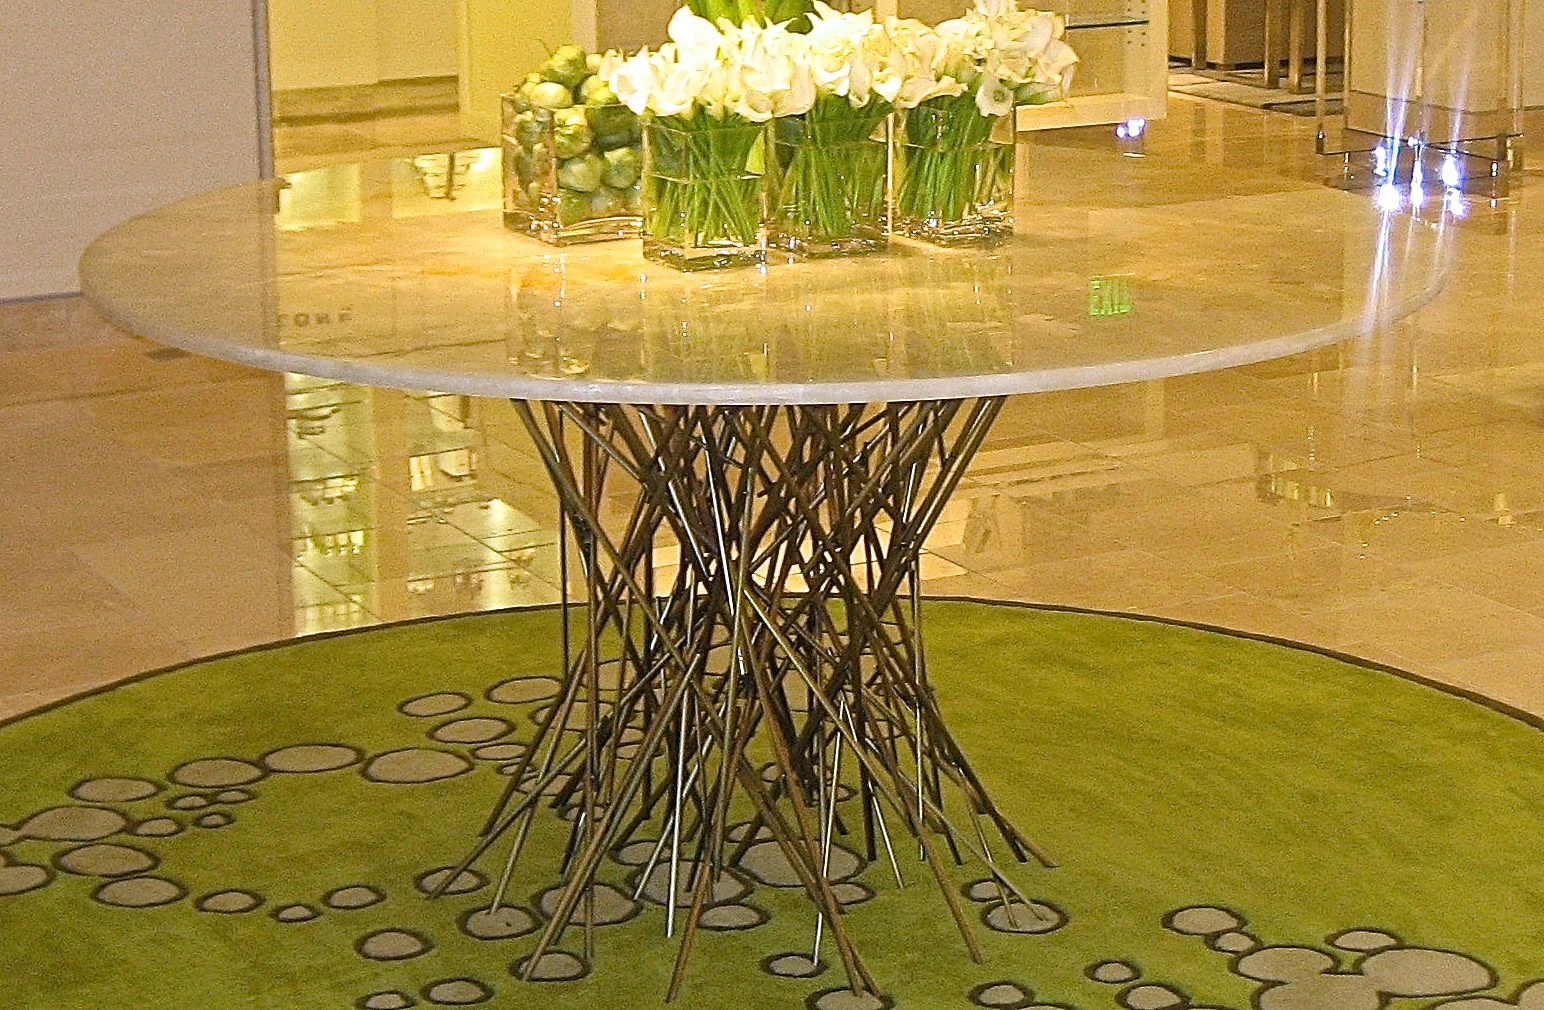 Custom table created for Neiman Marcus